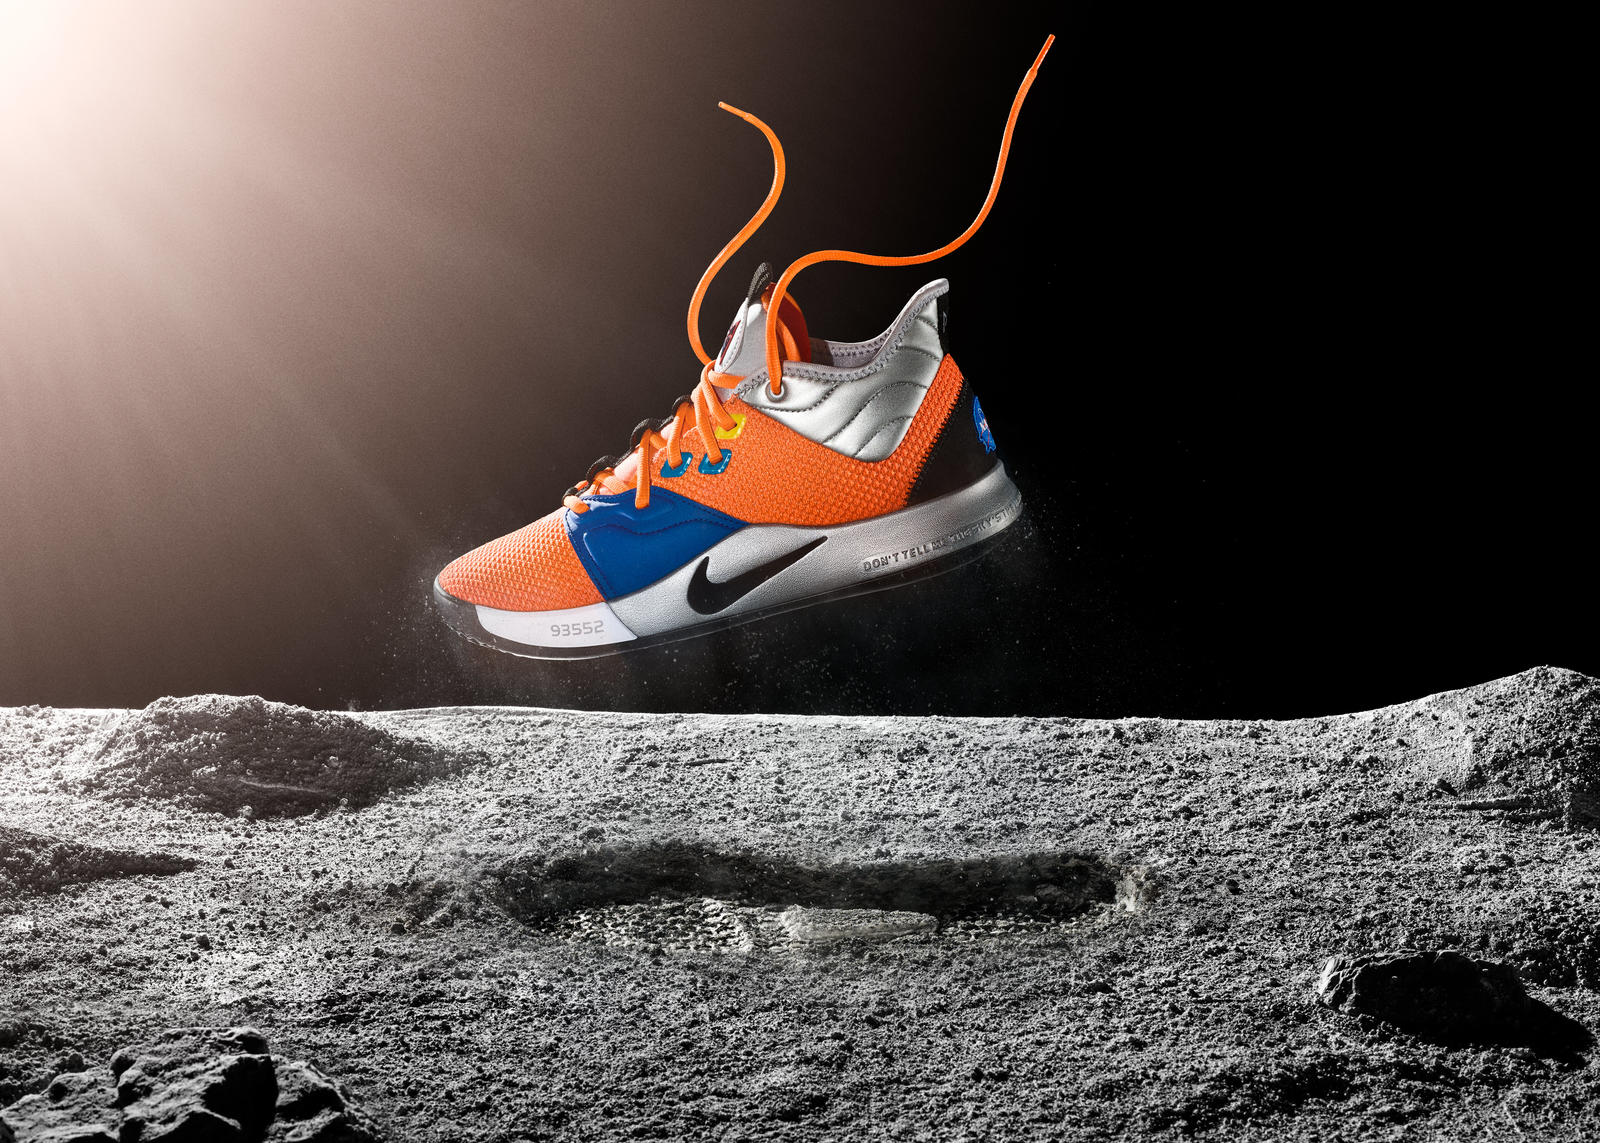 ナイキからNASAにちなんだデザインの限定シューズ 「Nike PG3 NASA colorway」が登場 | Webマガジン「AXIS